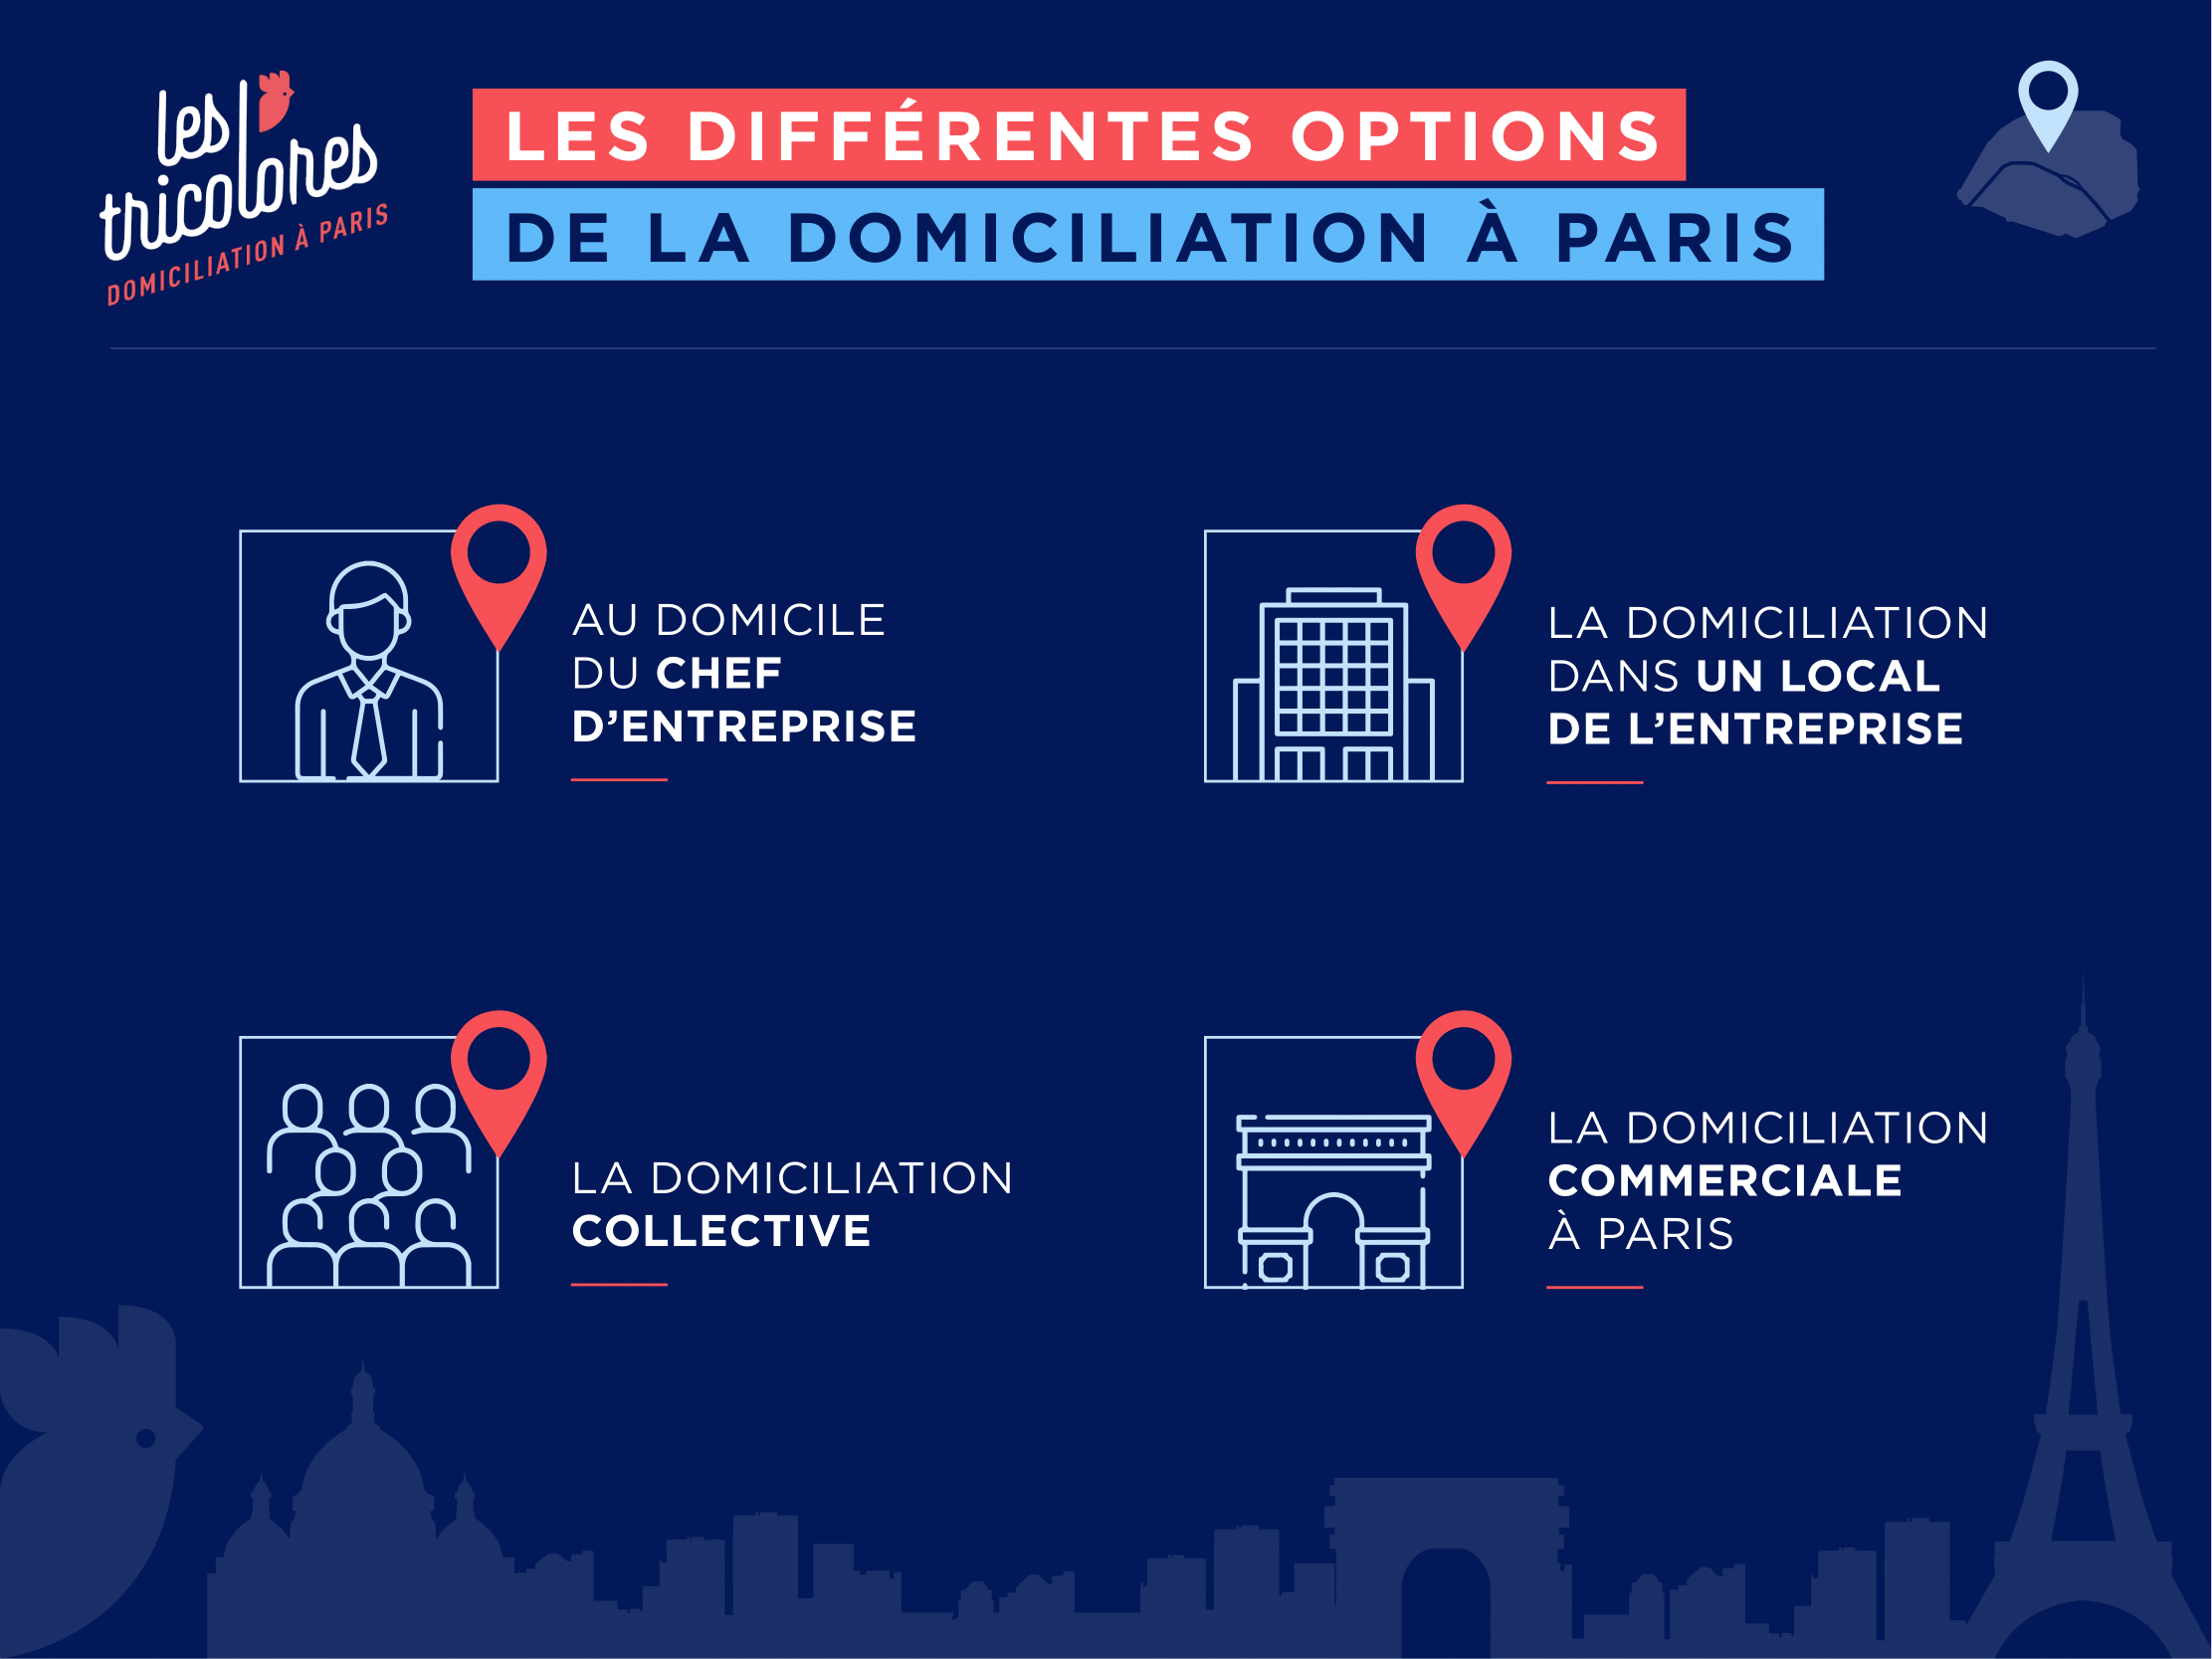 Les différentes options à la domiciliation d’entreprise à Paris